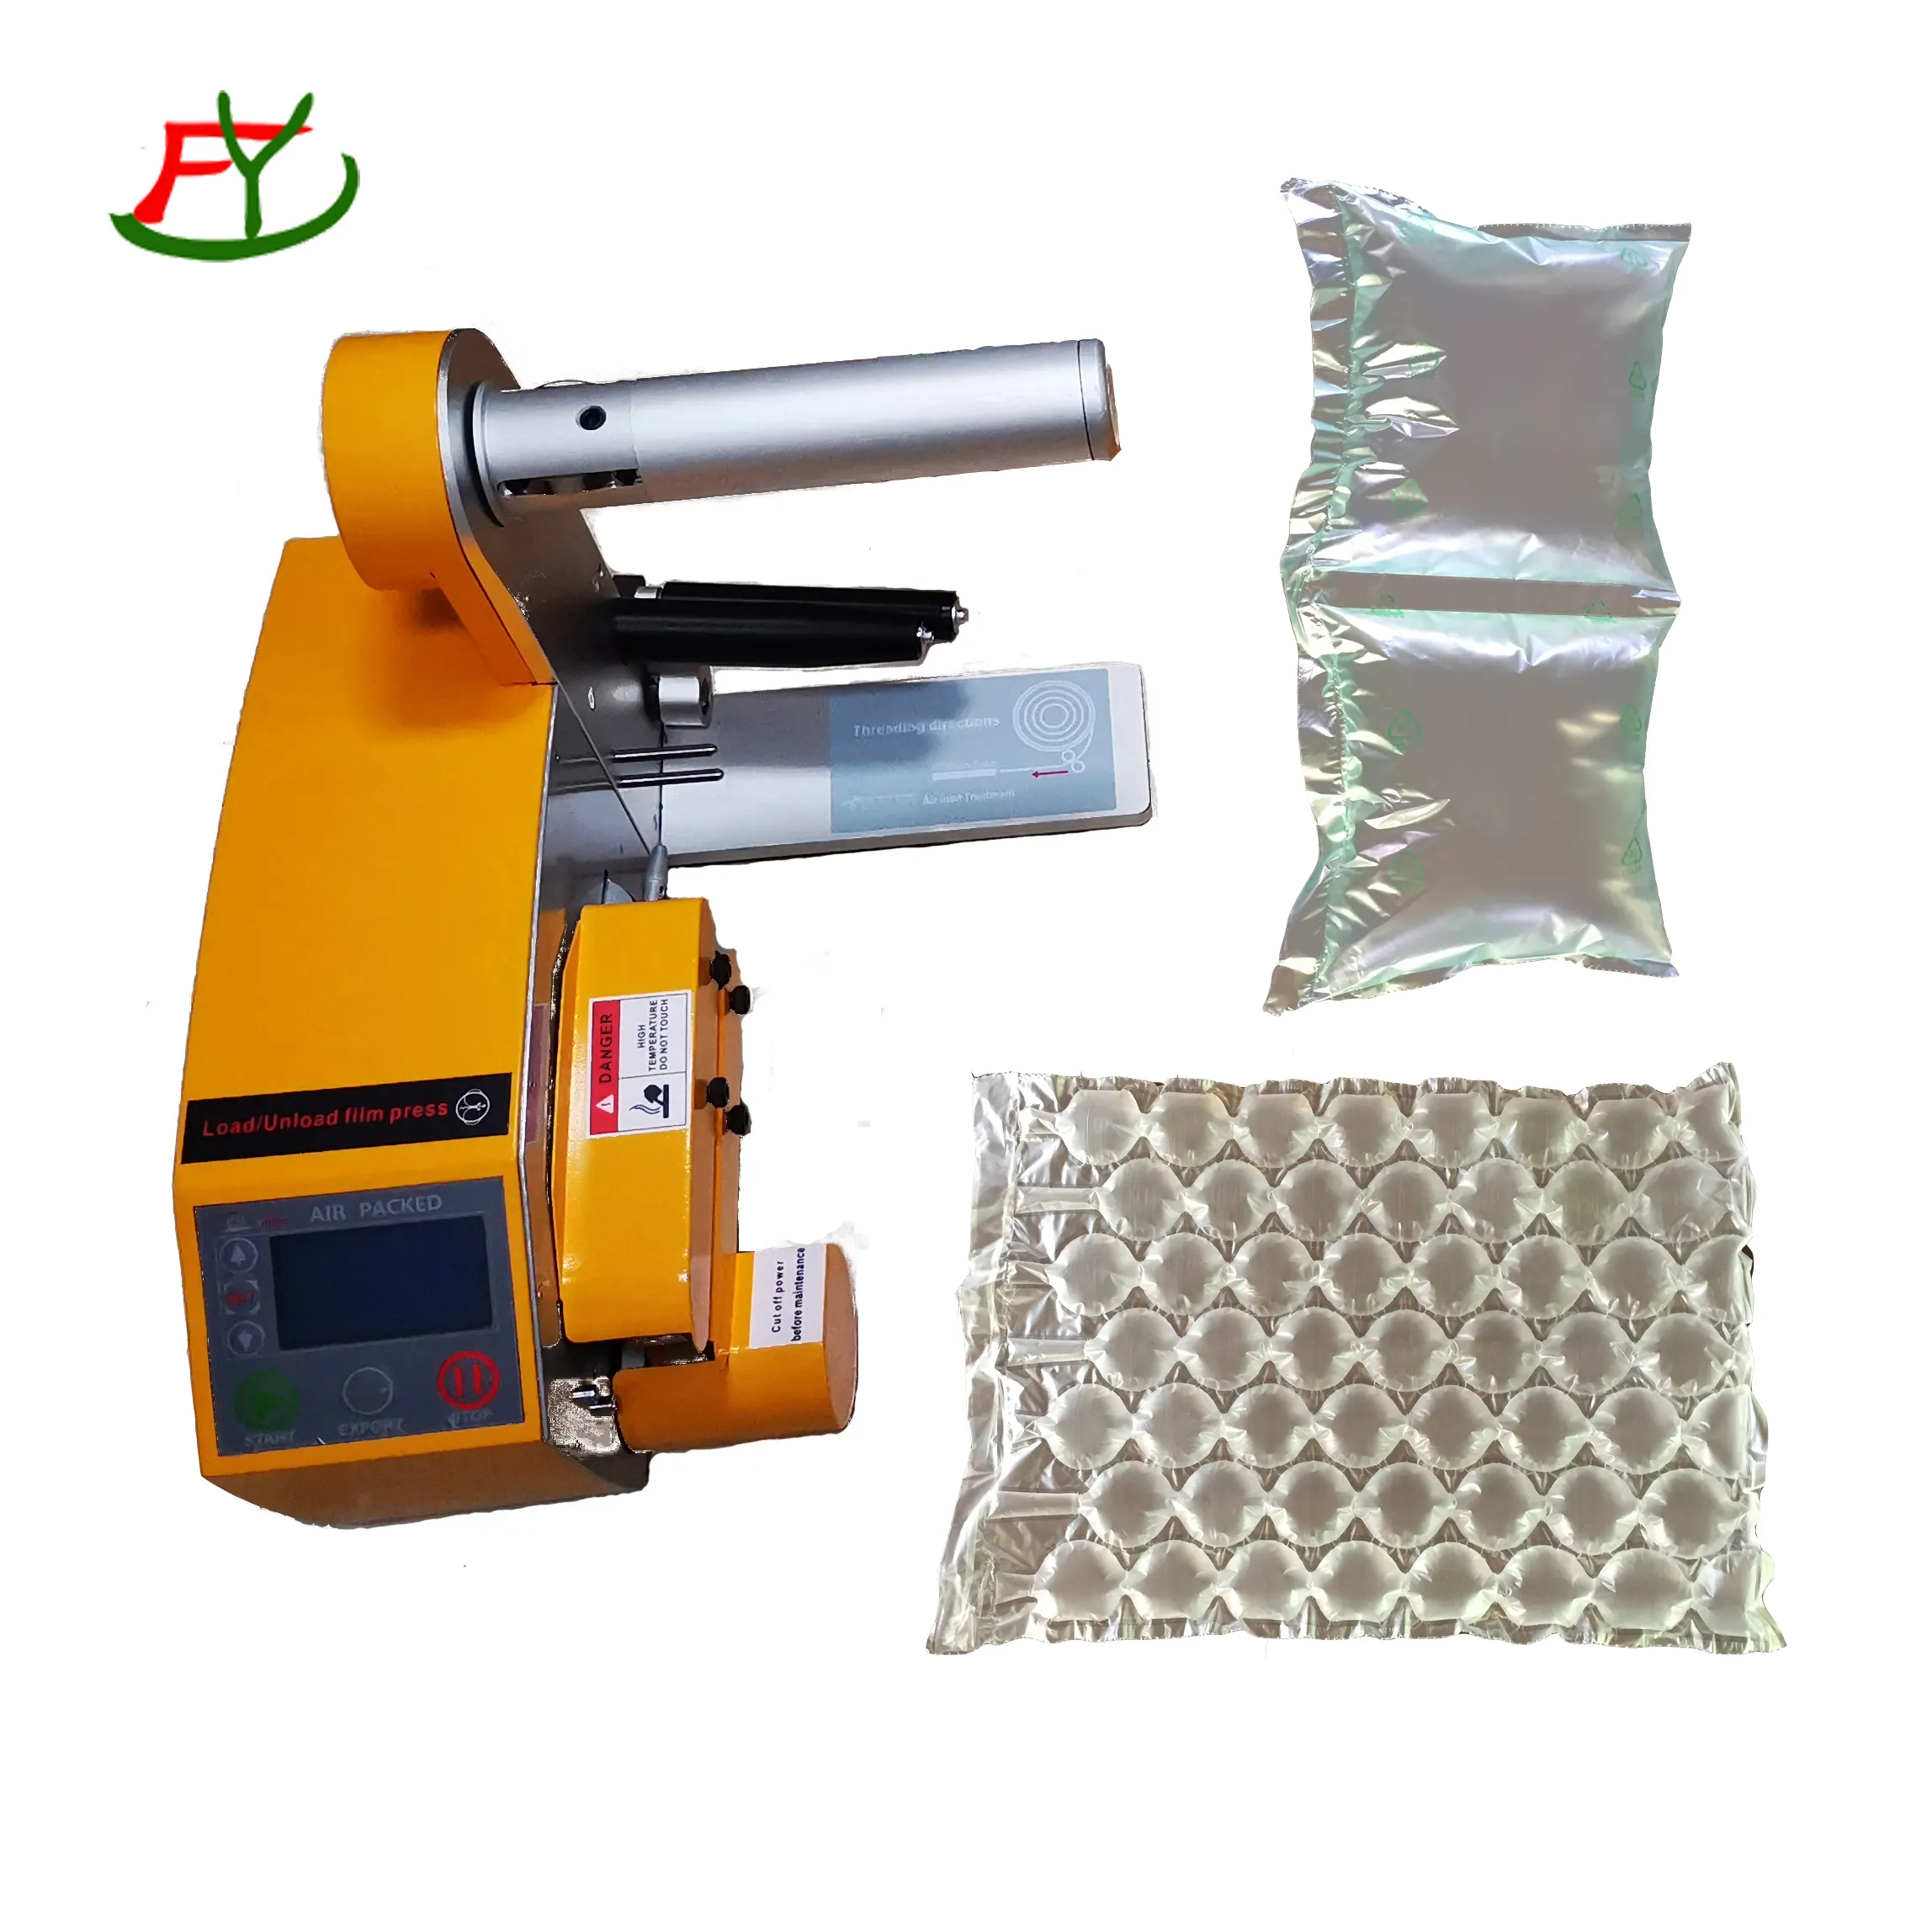 Il sistema di imballaggio a cuscino d'aria è una soluzione efficiente ed efficace per proteggere i prodotti durante la spedizione e la movimentazione